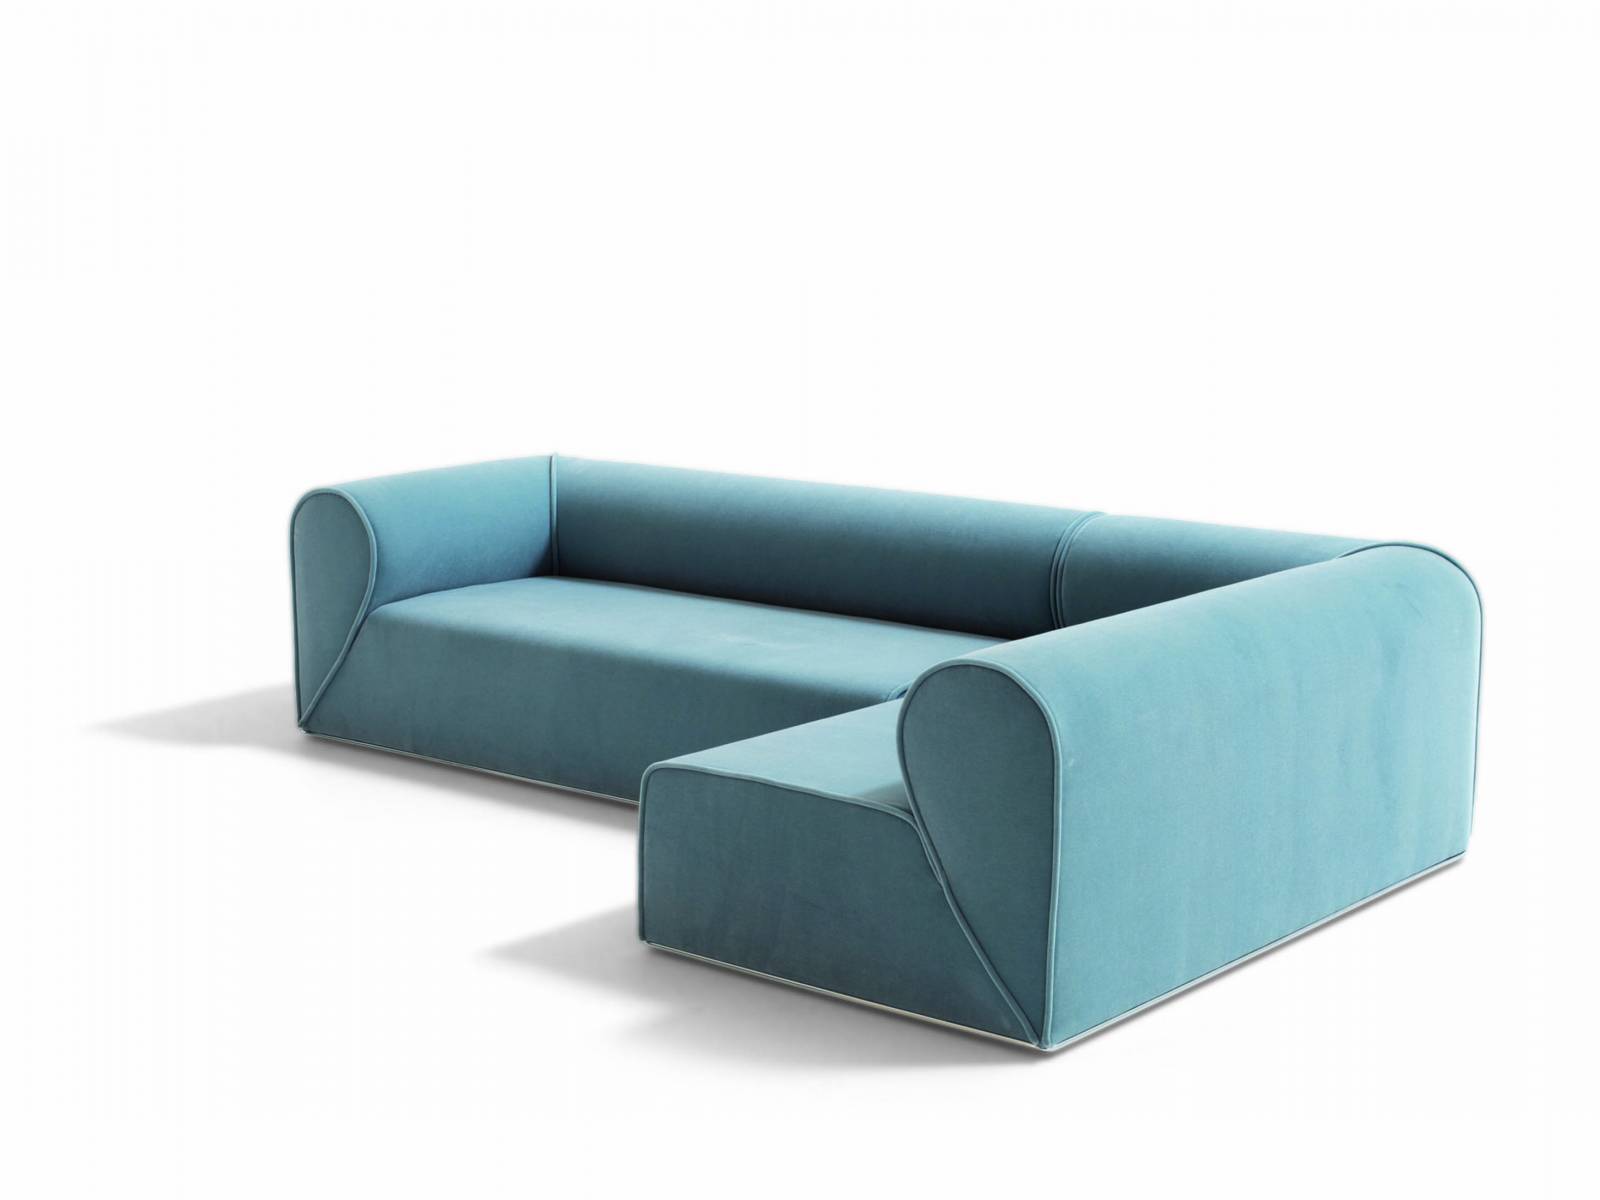 Heartbreaker ist eine minimalistische Sofa-Kollektion des Kopenhagener Designers Johannes Torpe. Seinen Namen gab ihr das spezielle Design der Armlehnen, die jeweils ein halbes Herz bilden und sich zu einem vollen Herzen verbinden, wenn mehrere Sofas nebeneinander stehen. Moroso.